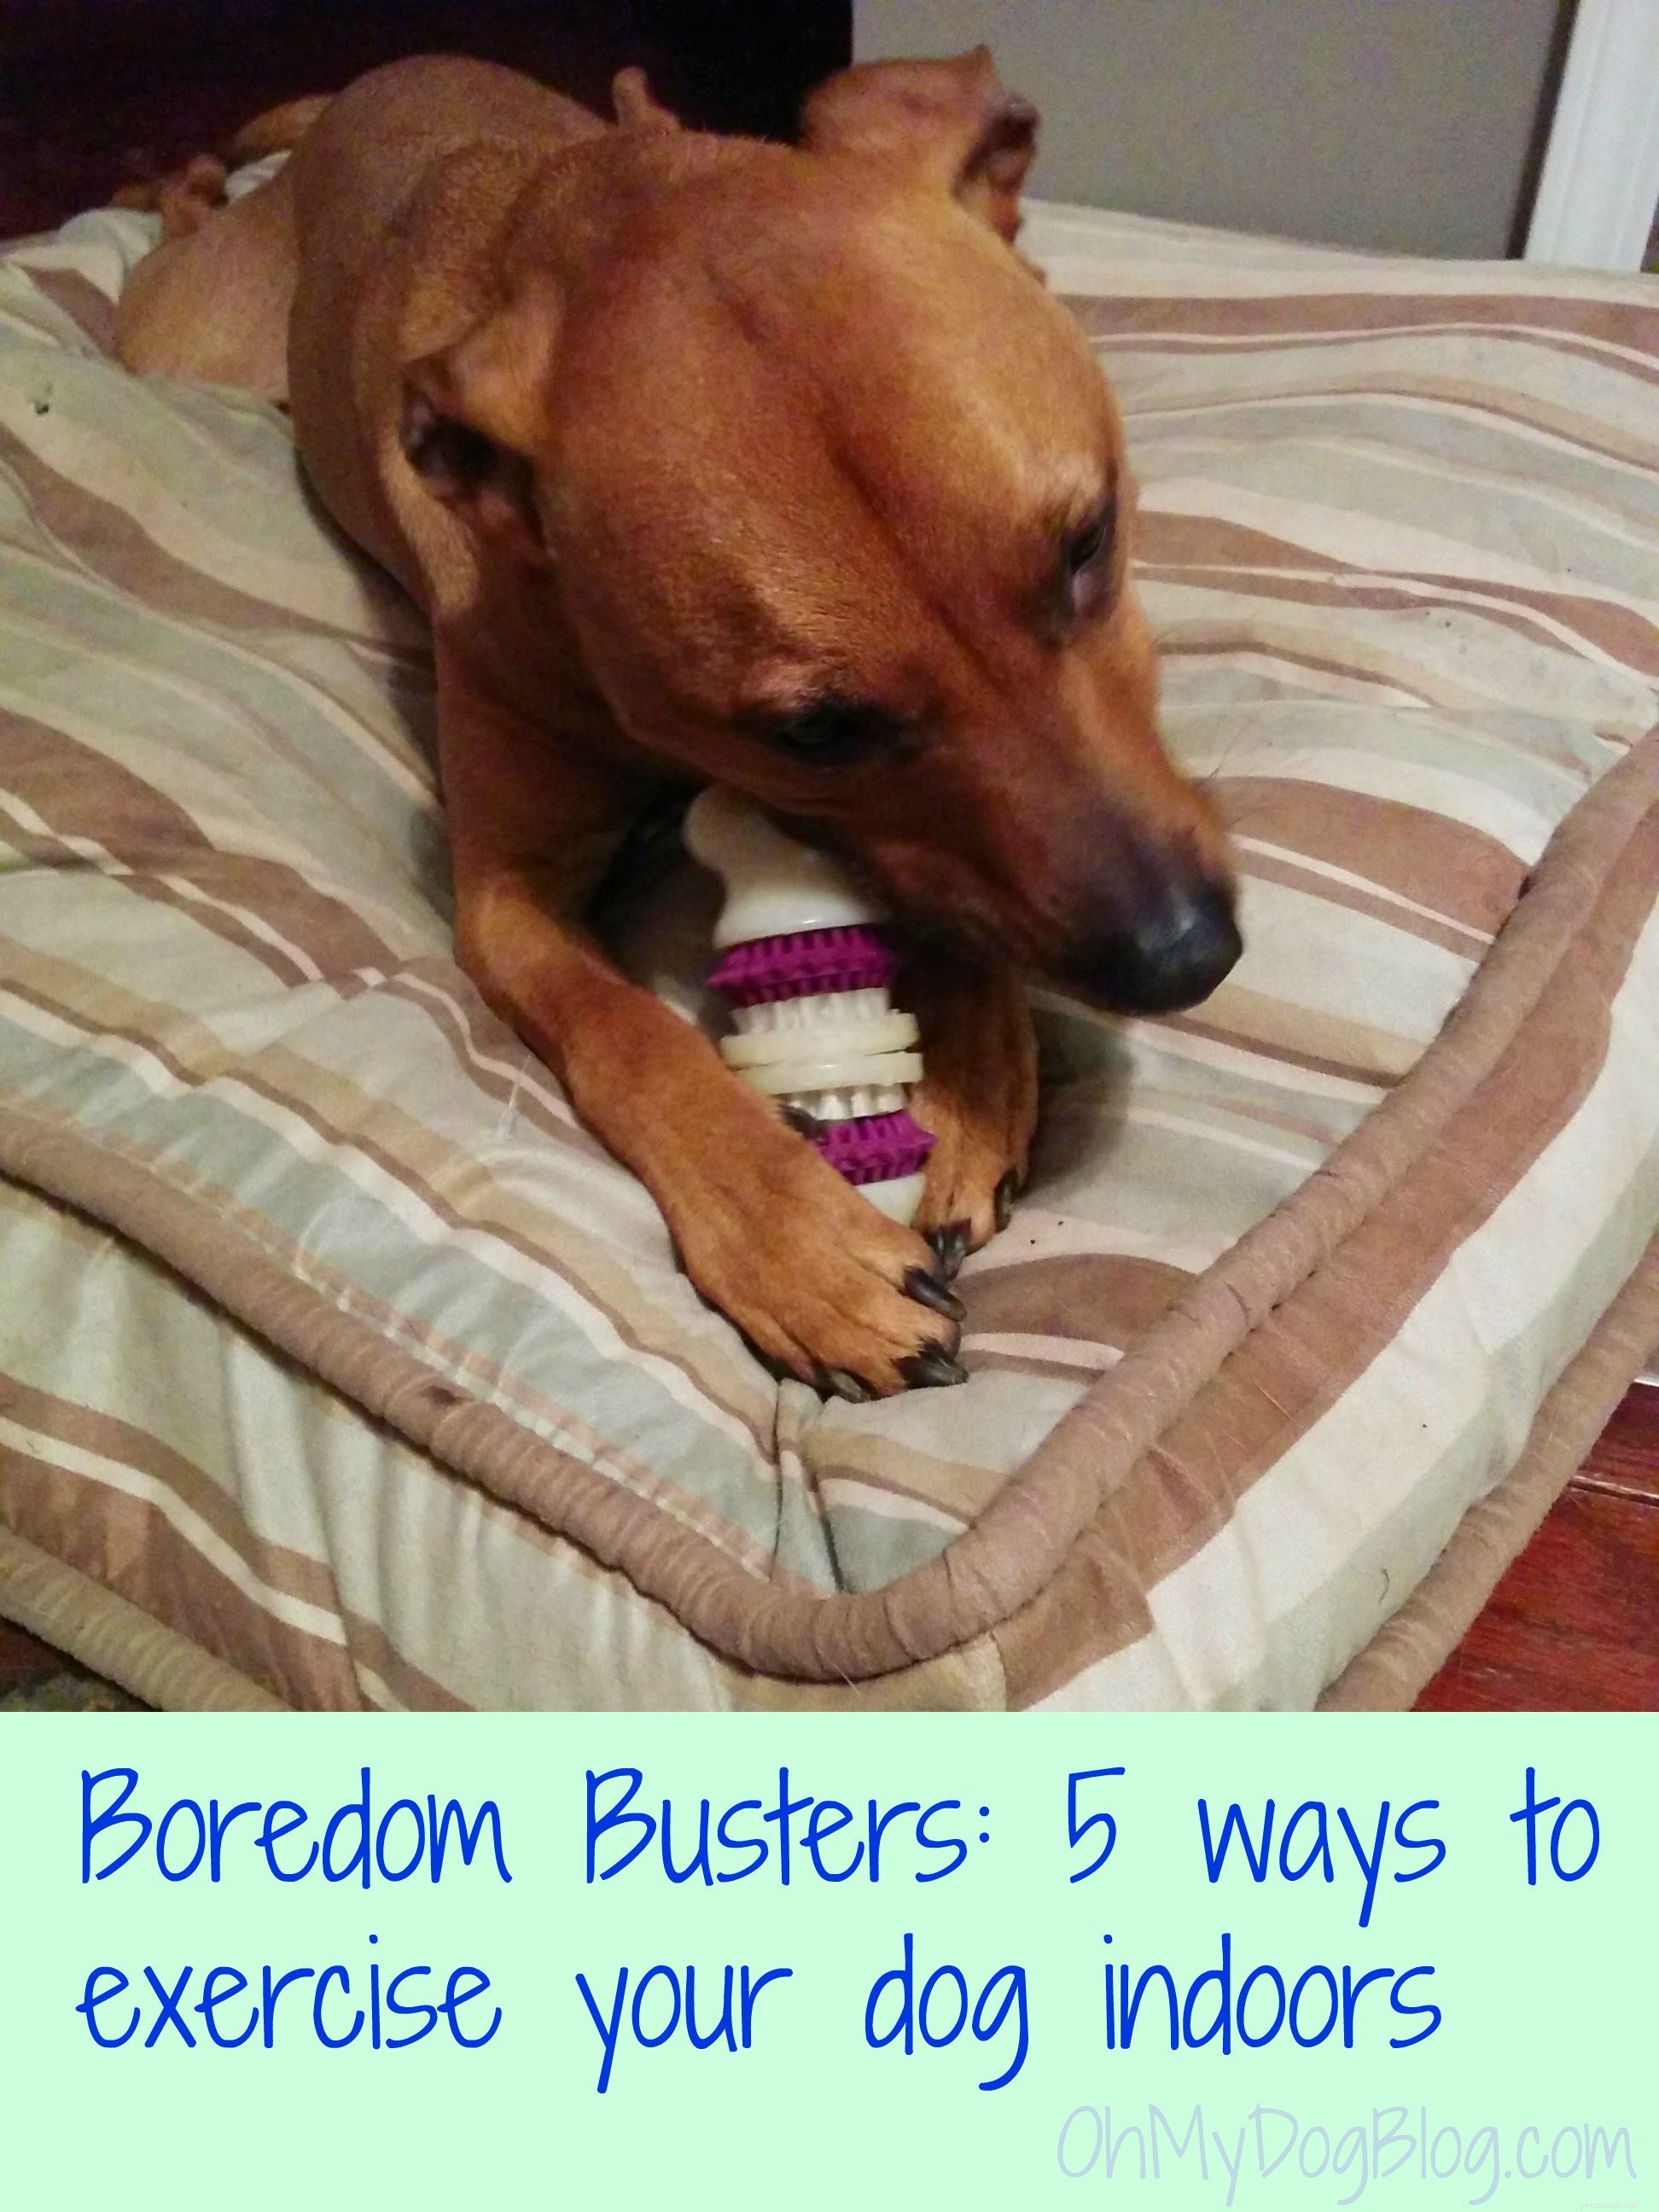 Boredom Busters:실내에서 개를 운동시키는 5가지 방법